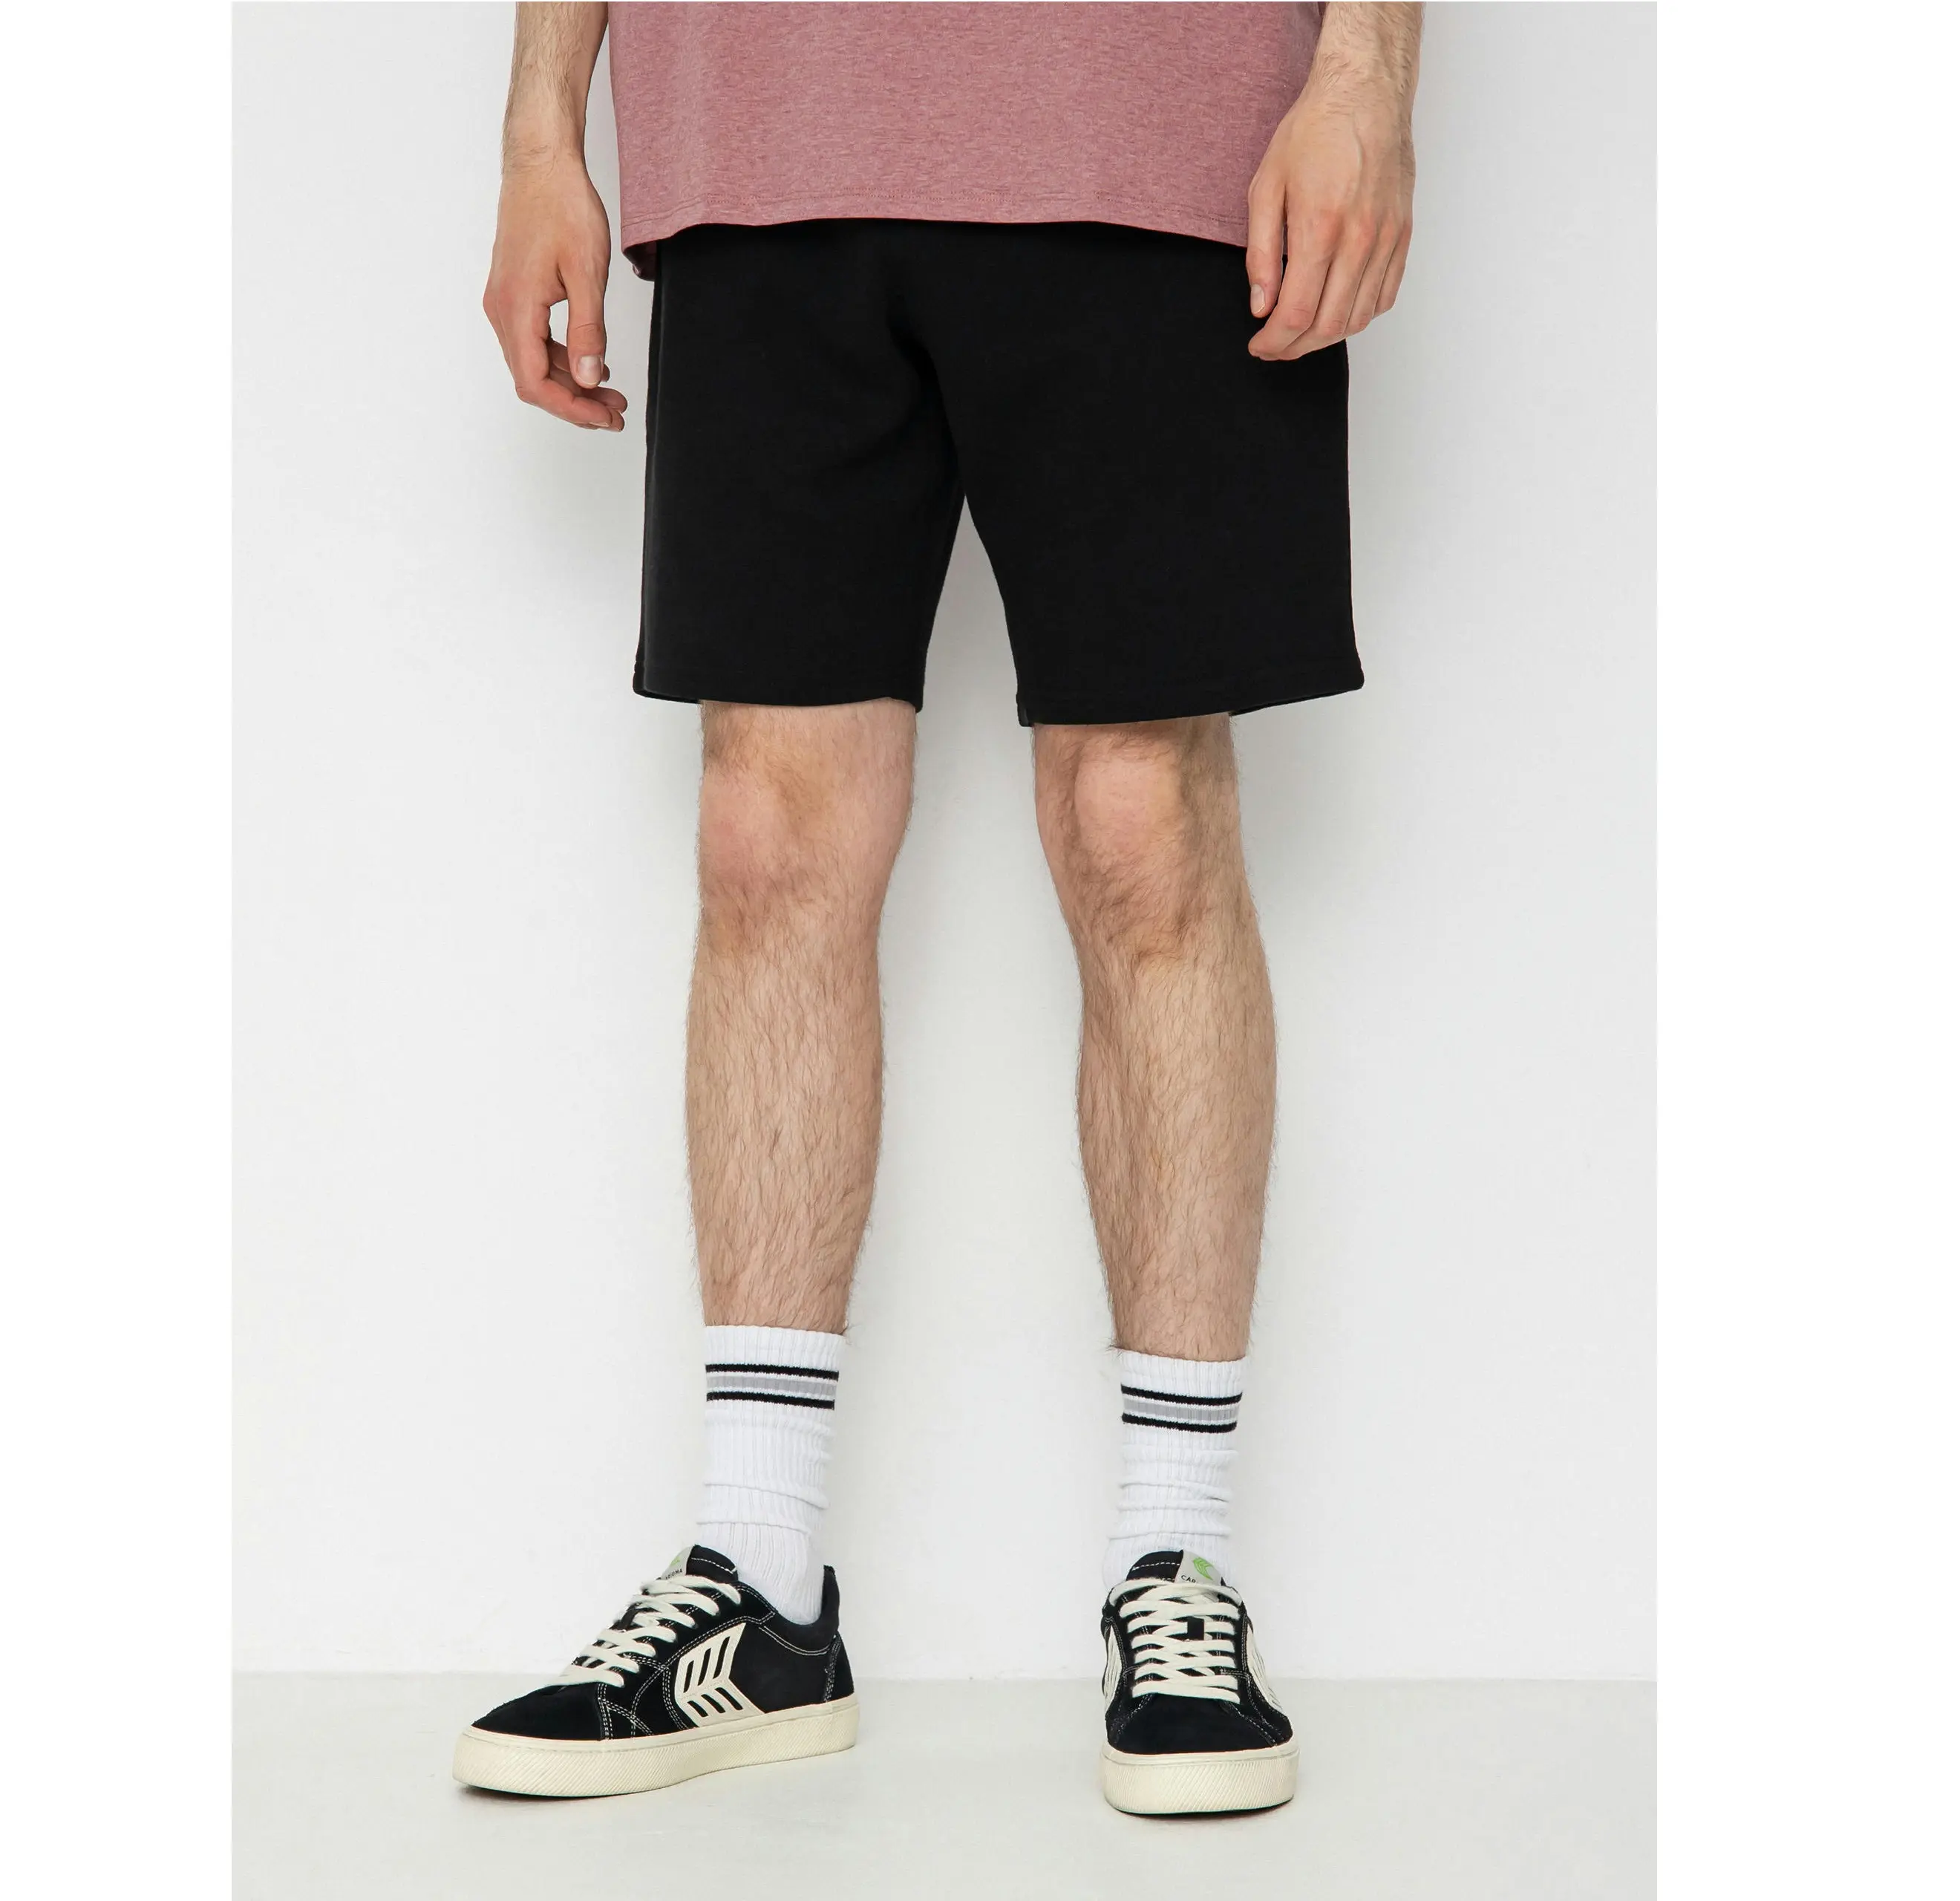 Oem verão masculino ginásio usar shorts de jogger com bolso treino logotipo personalizado em relevo calças curtas de corrida de secagem rápida para homem